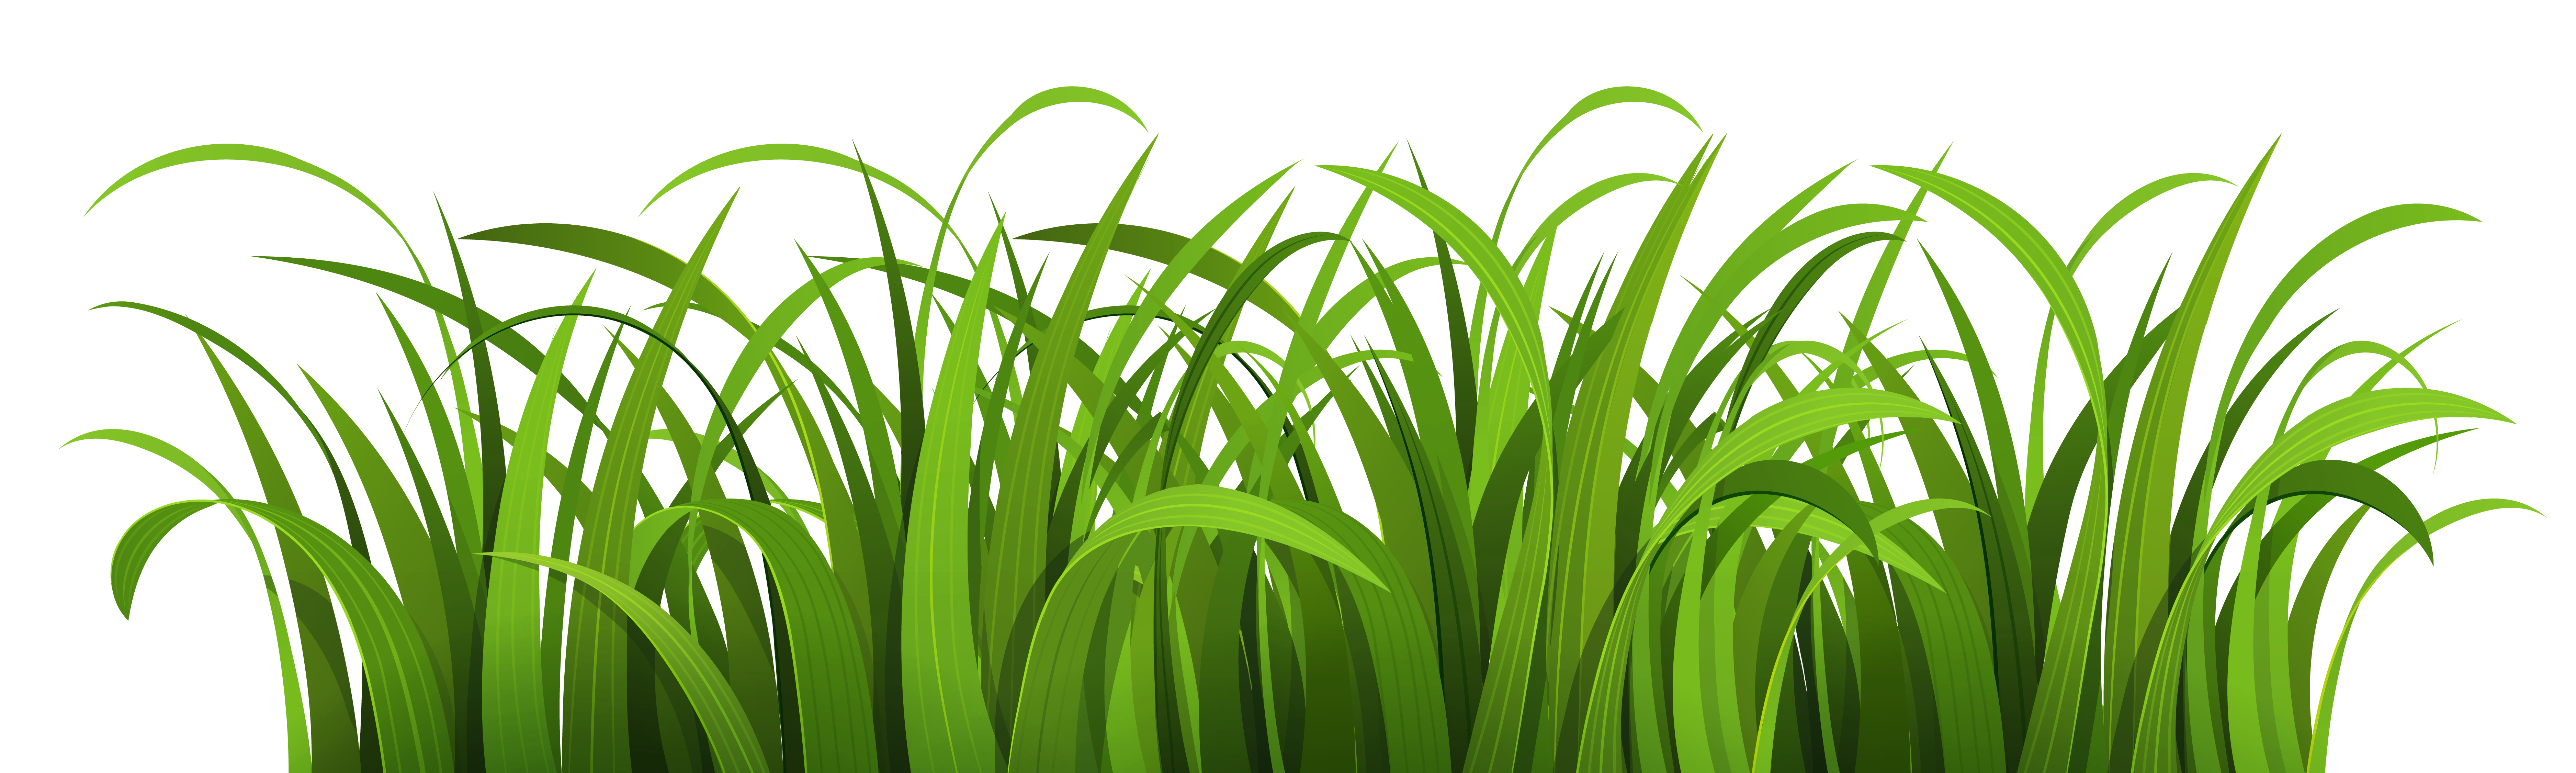 grass clipart vector